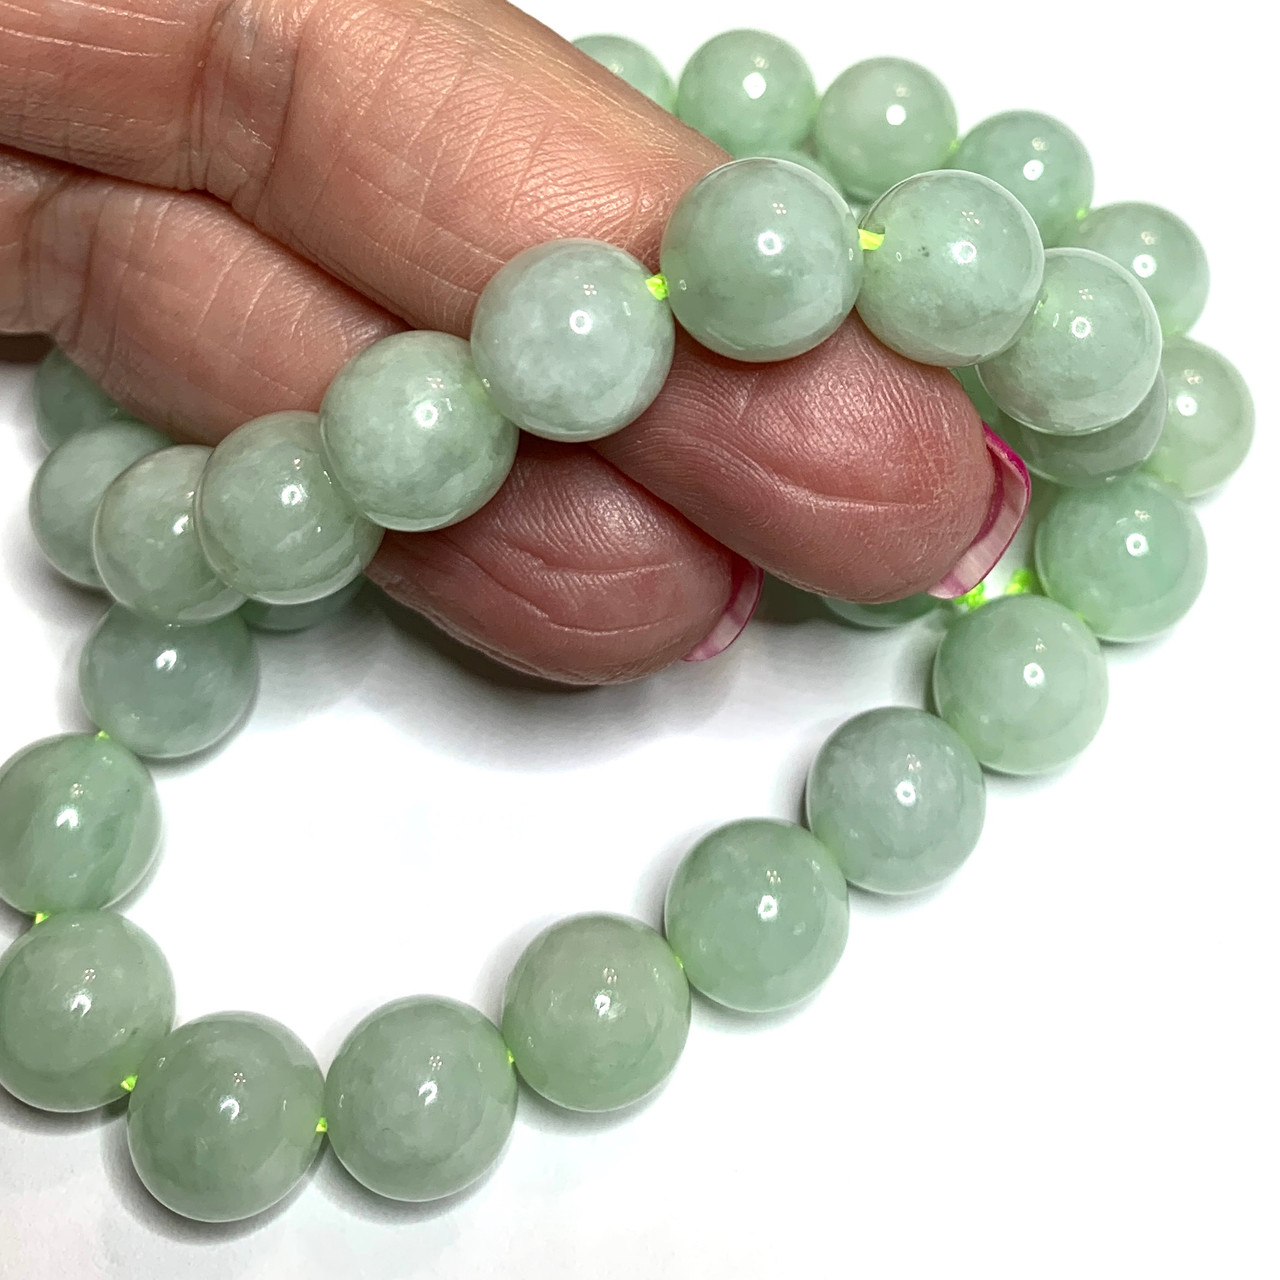 Burmese Natural Jadeite Jade Beads Bracelet | AME Jewellery